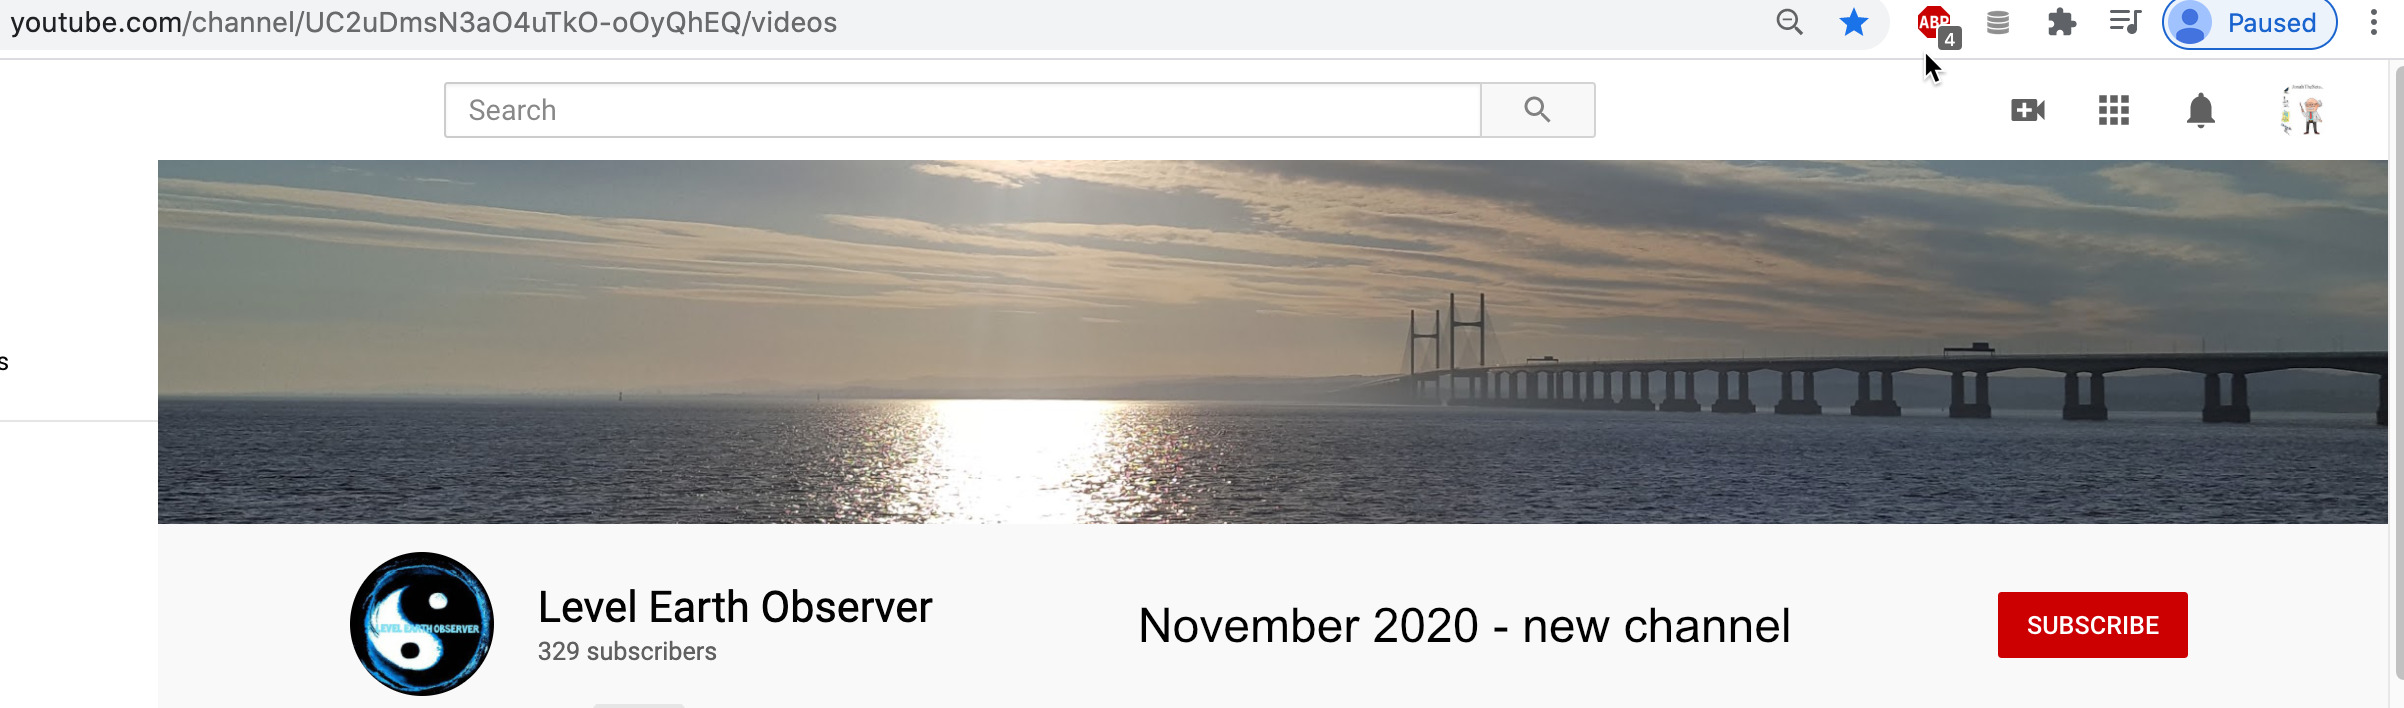 Level Earth Observer - new channel Nov 2020.jpg